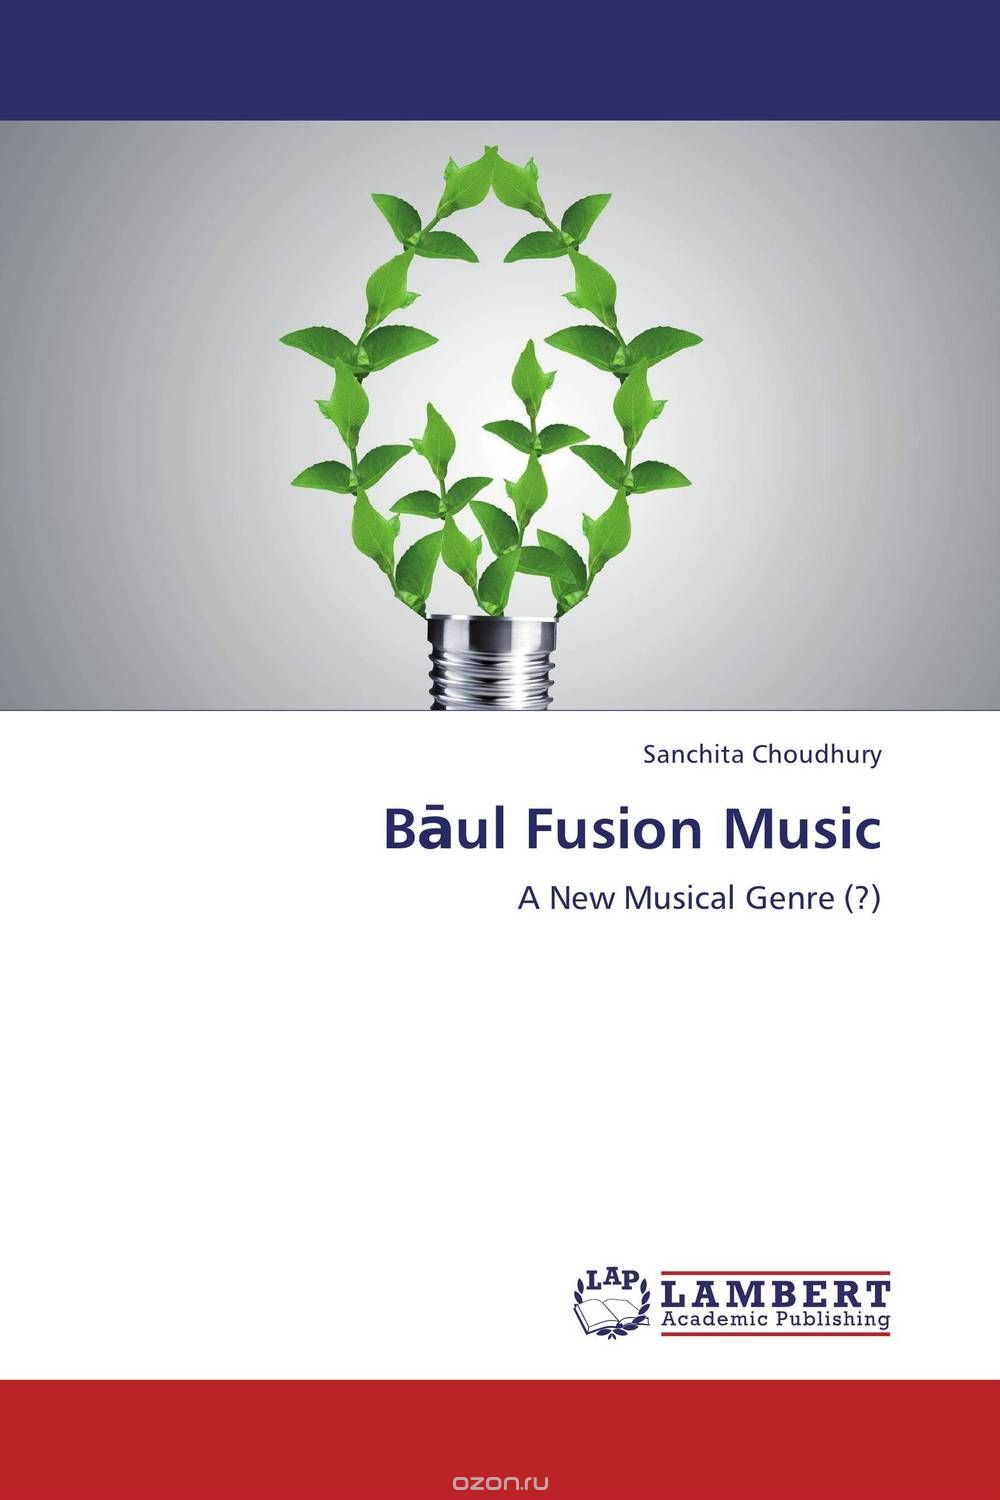 Скачать книгу "Baul Fusion Music"